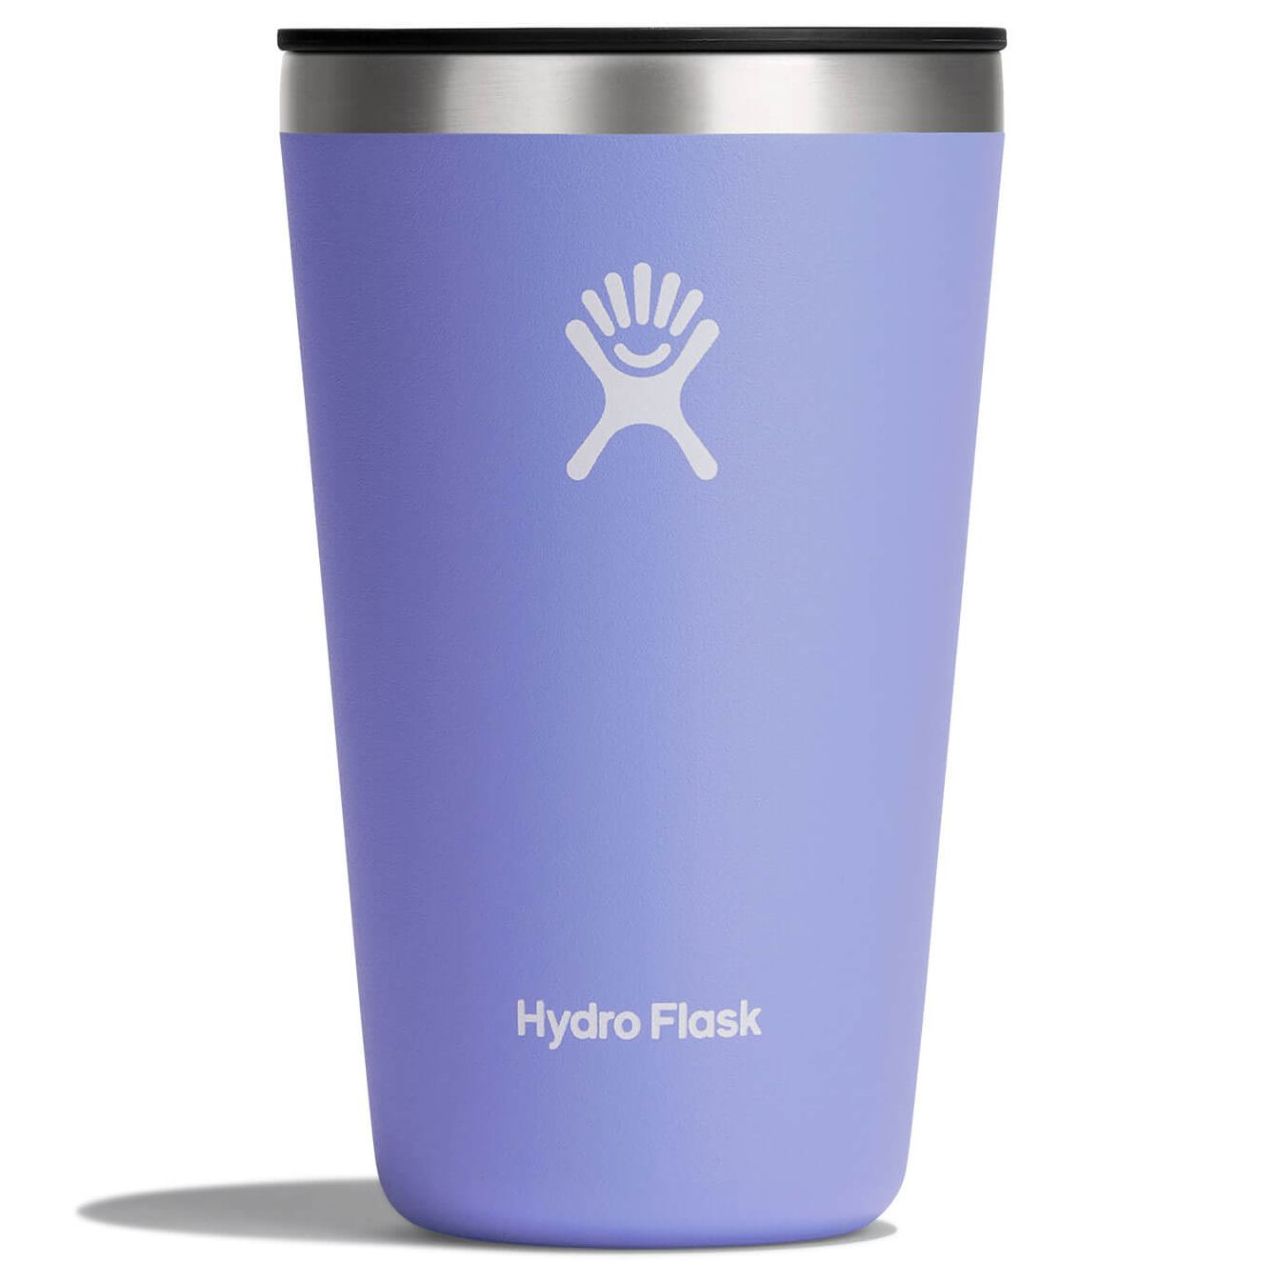 Hydro Flask' 16 oz. All Around™ Tumbler - Laguna